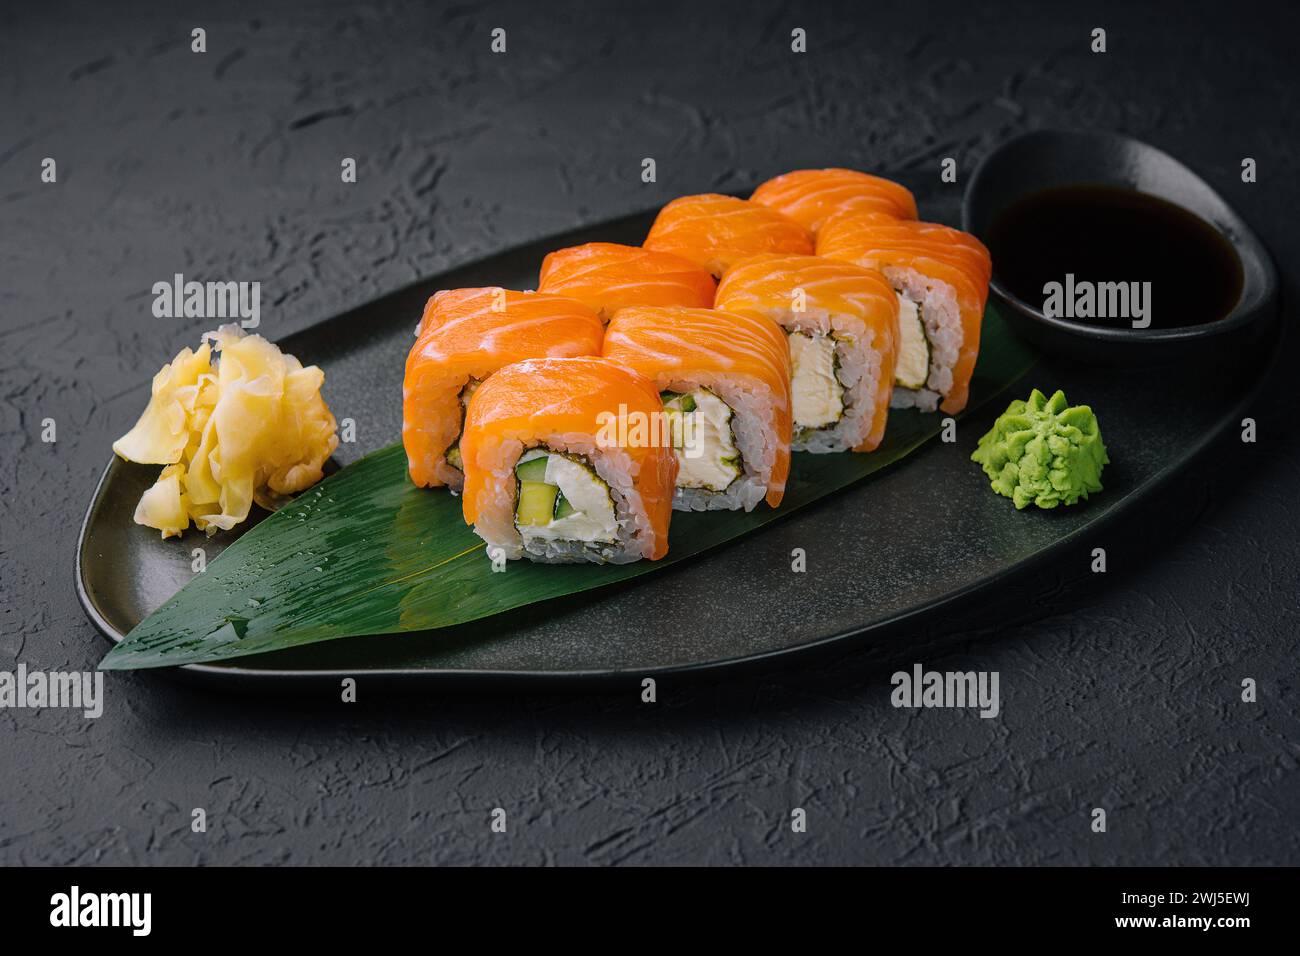 Délicieux sushi philadelphia frais sur assiette noire Banque D'Images